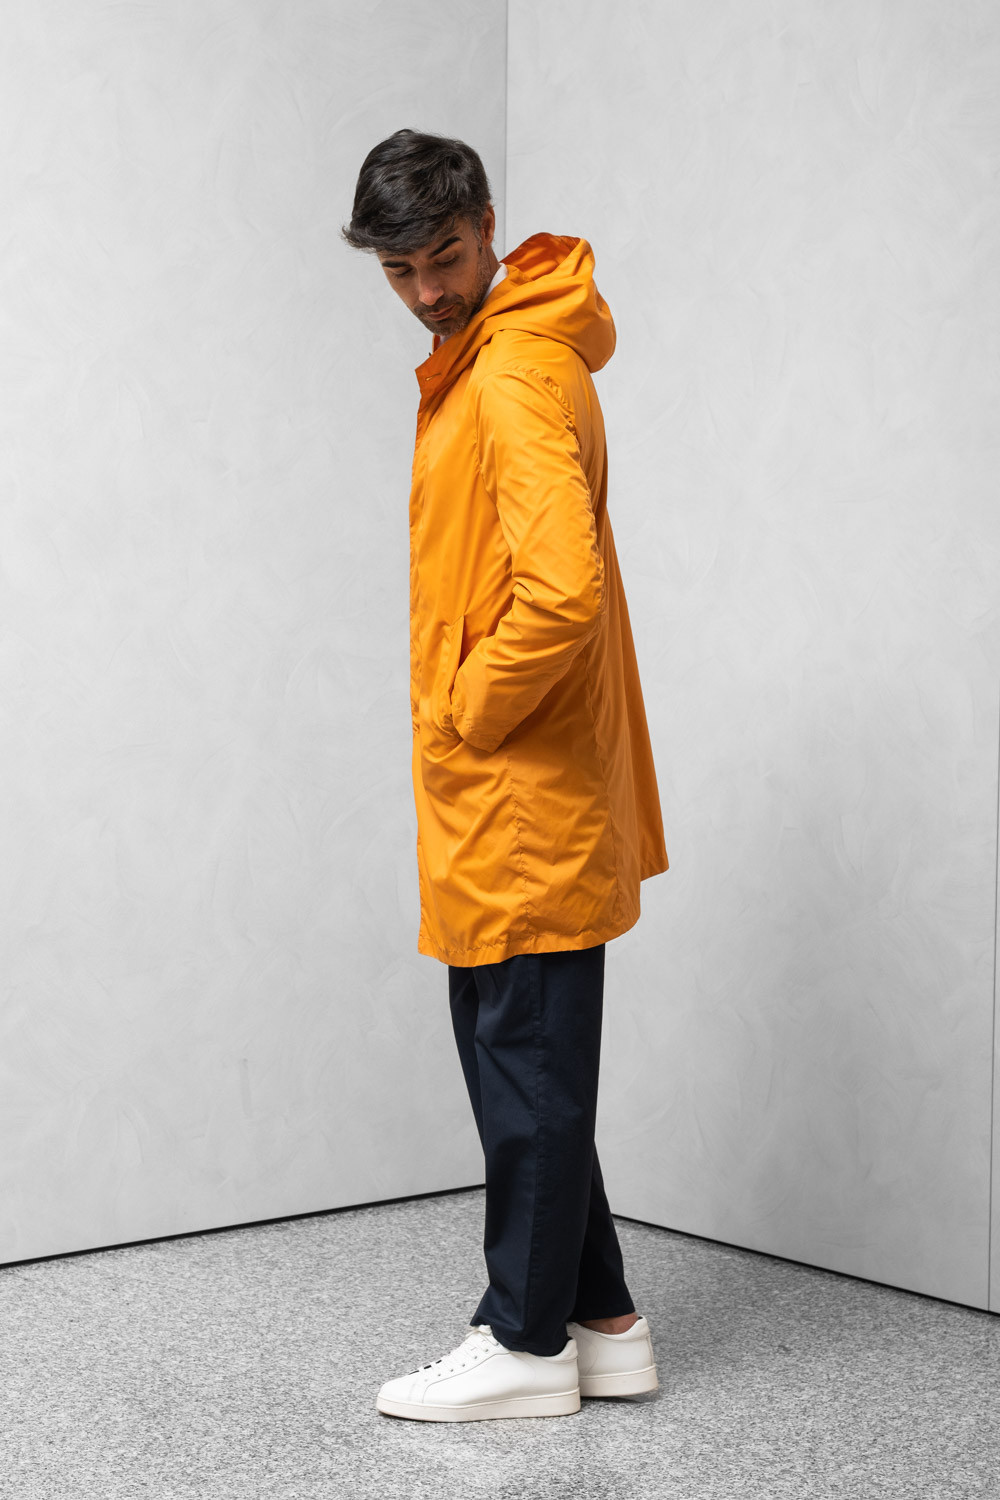 Cappotto idrorepellente uomo cappuccio tasca porta cappotto nocciola 0909 PARDO-164